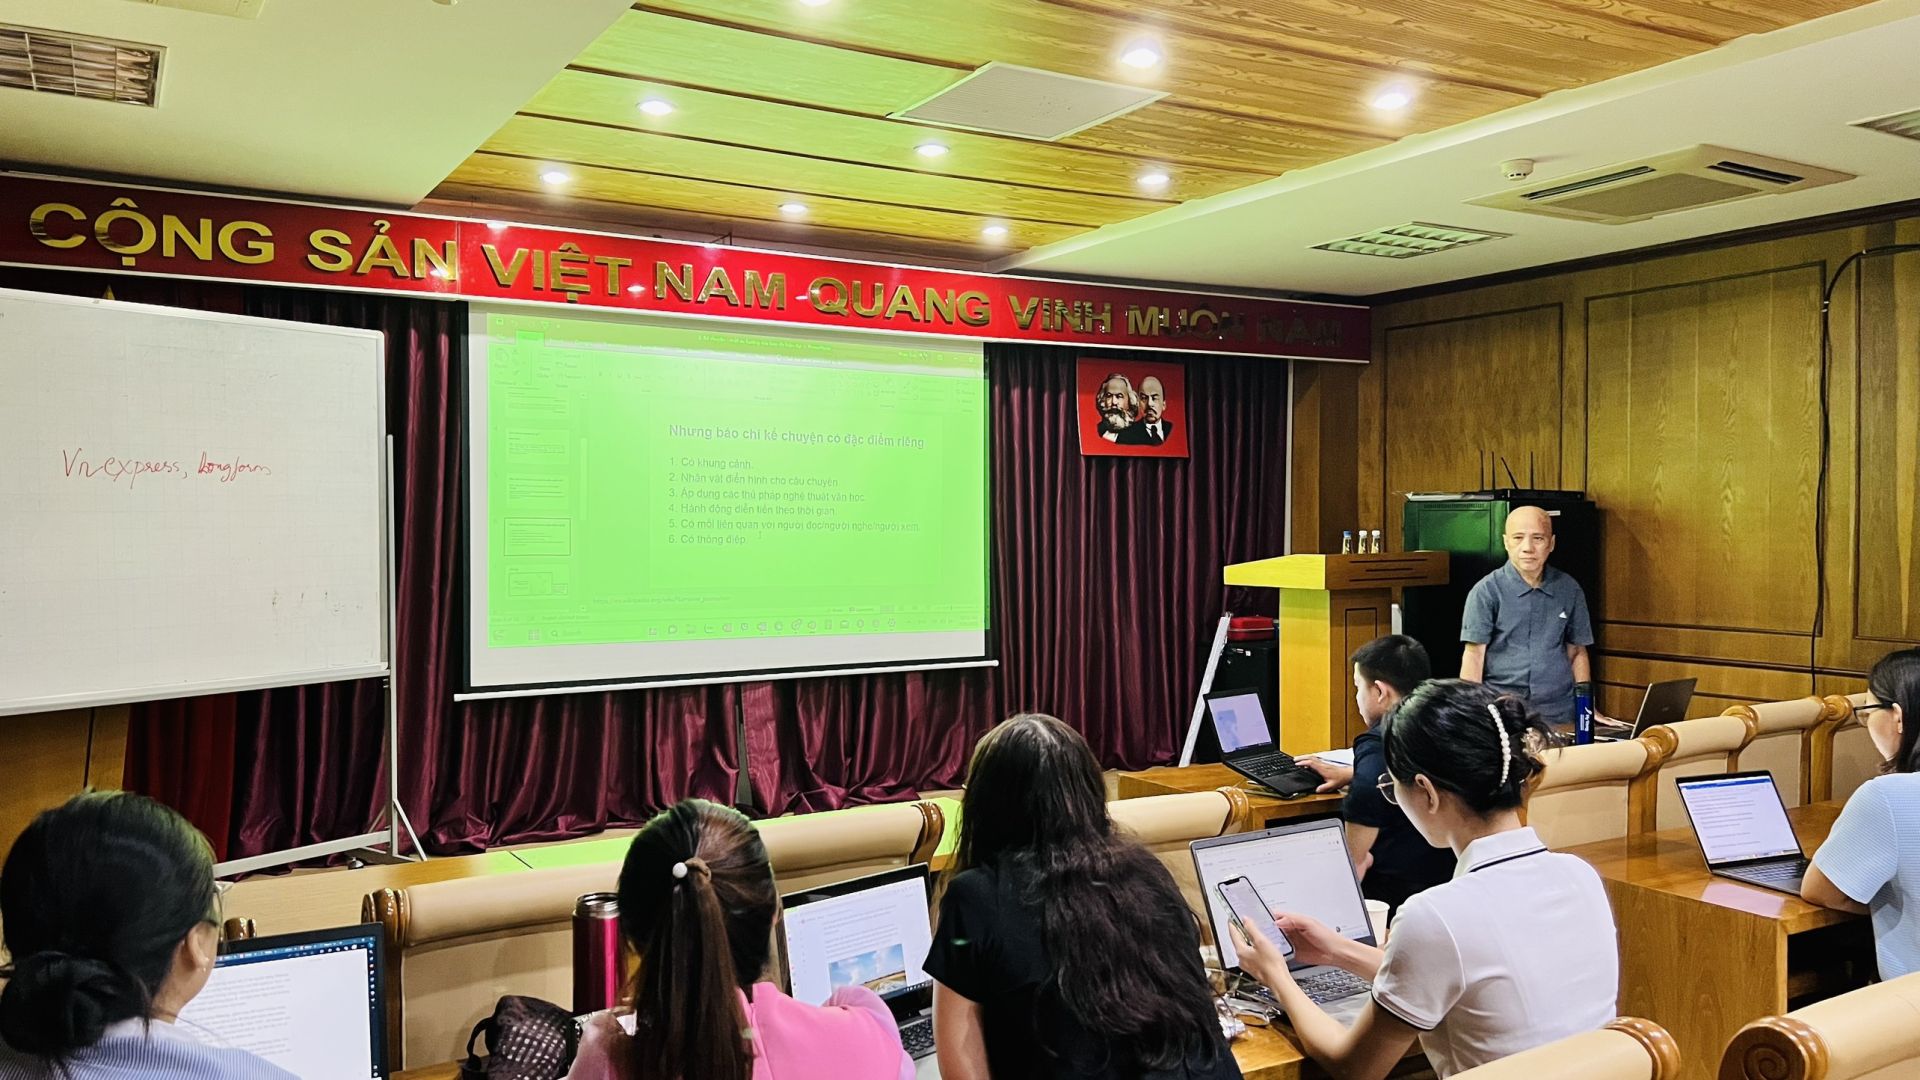 Thạc sĩ Phan Kim Sơn chia sẻ những kỹ năng viết về sức khỏe, môi trường bằng báo chí kể chuyện cho các học viên